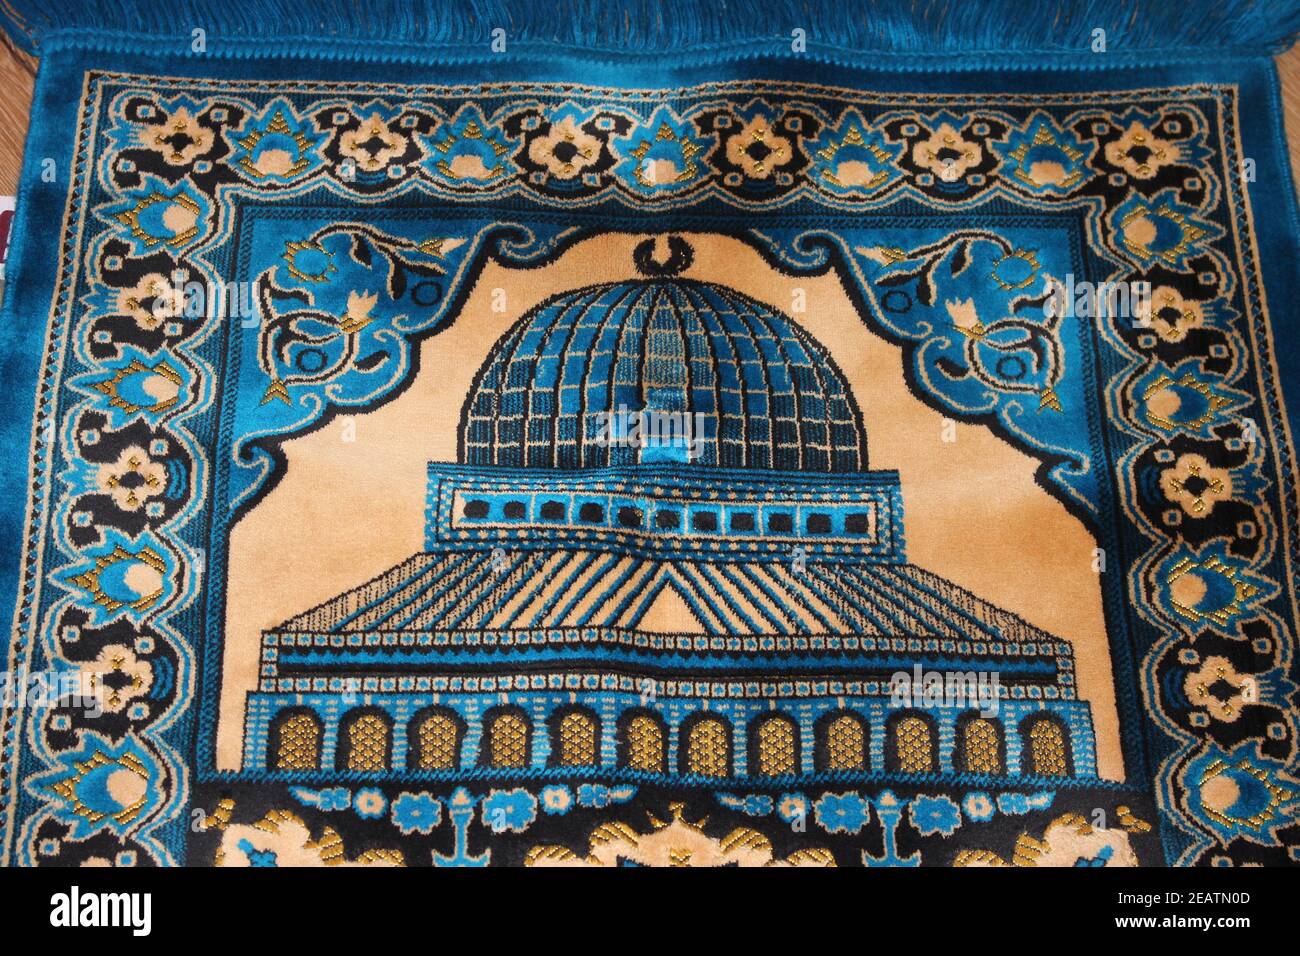 Vue en grand angle d'un beau tapis de prière ou d'un tapis de prière Pour les musulmans Banque D'Images